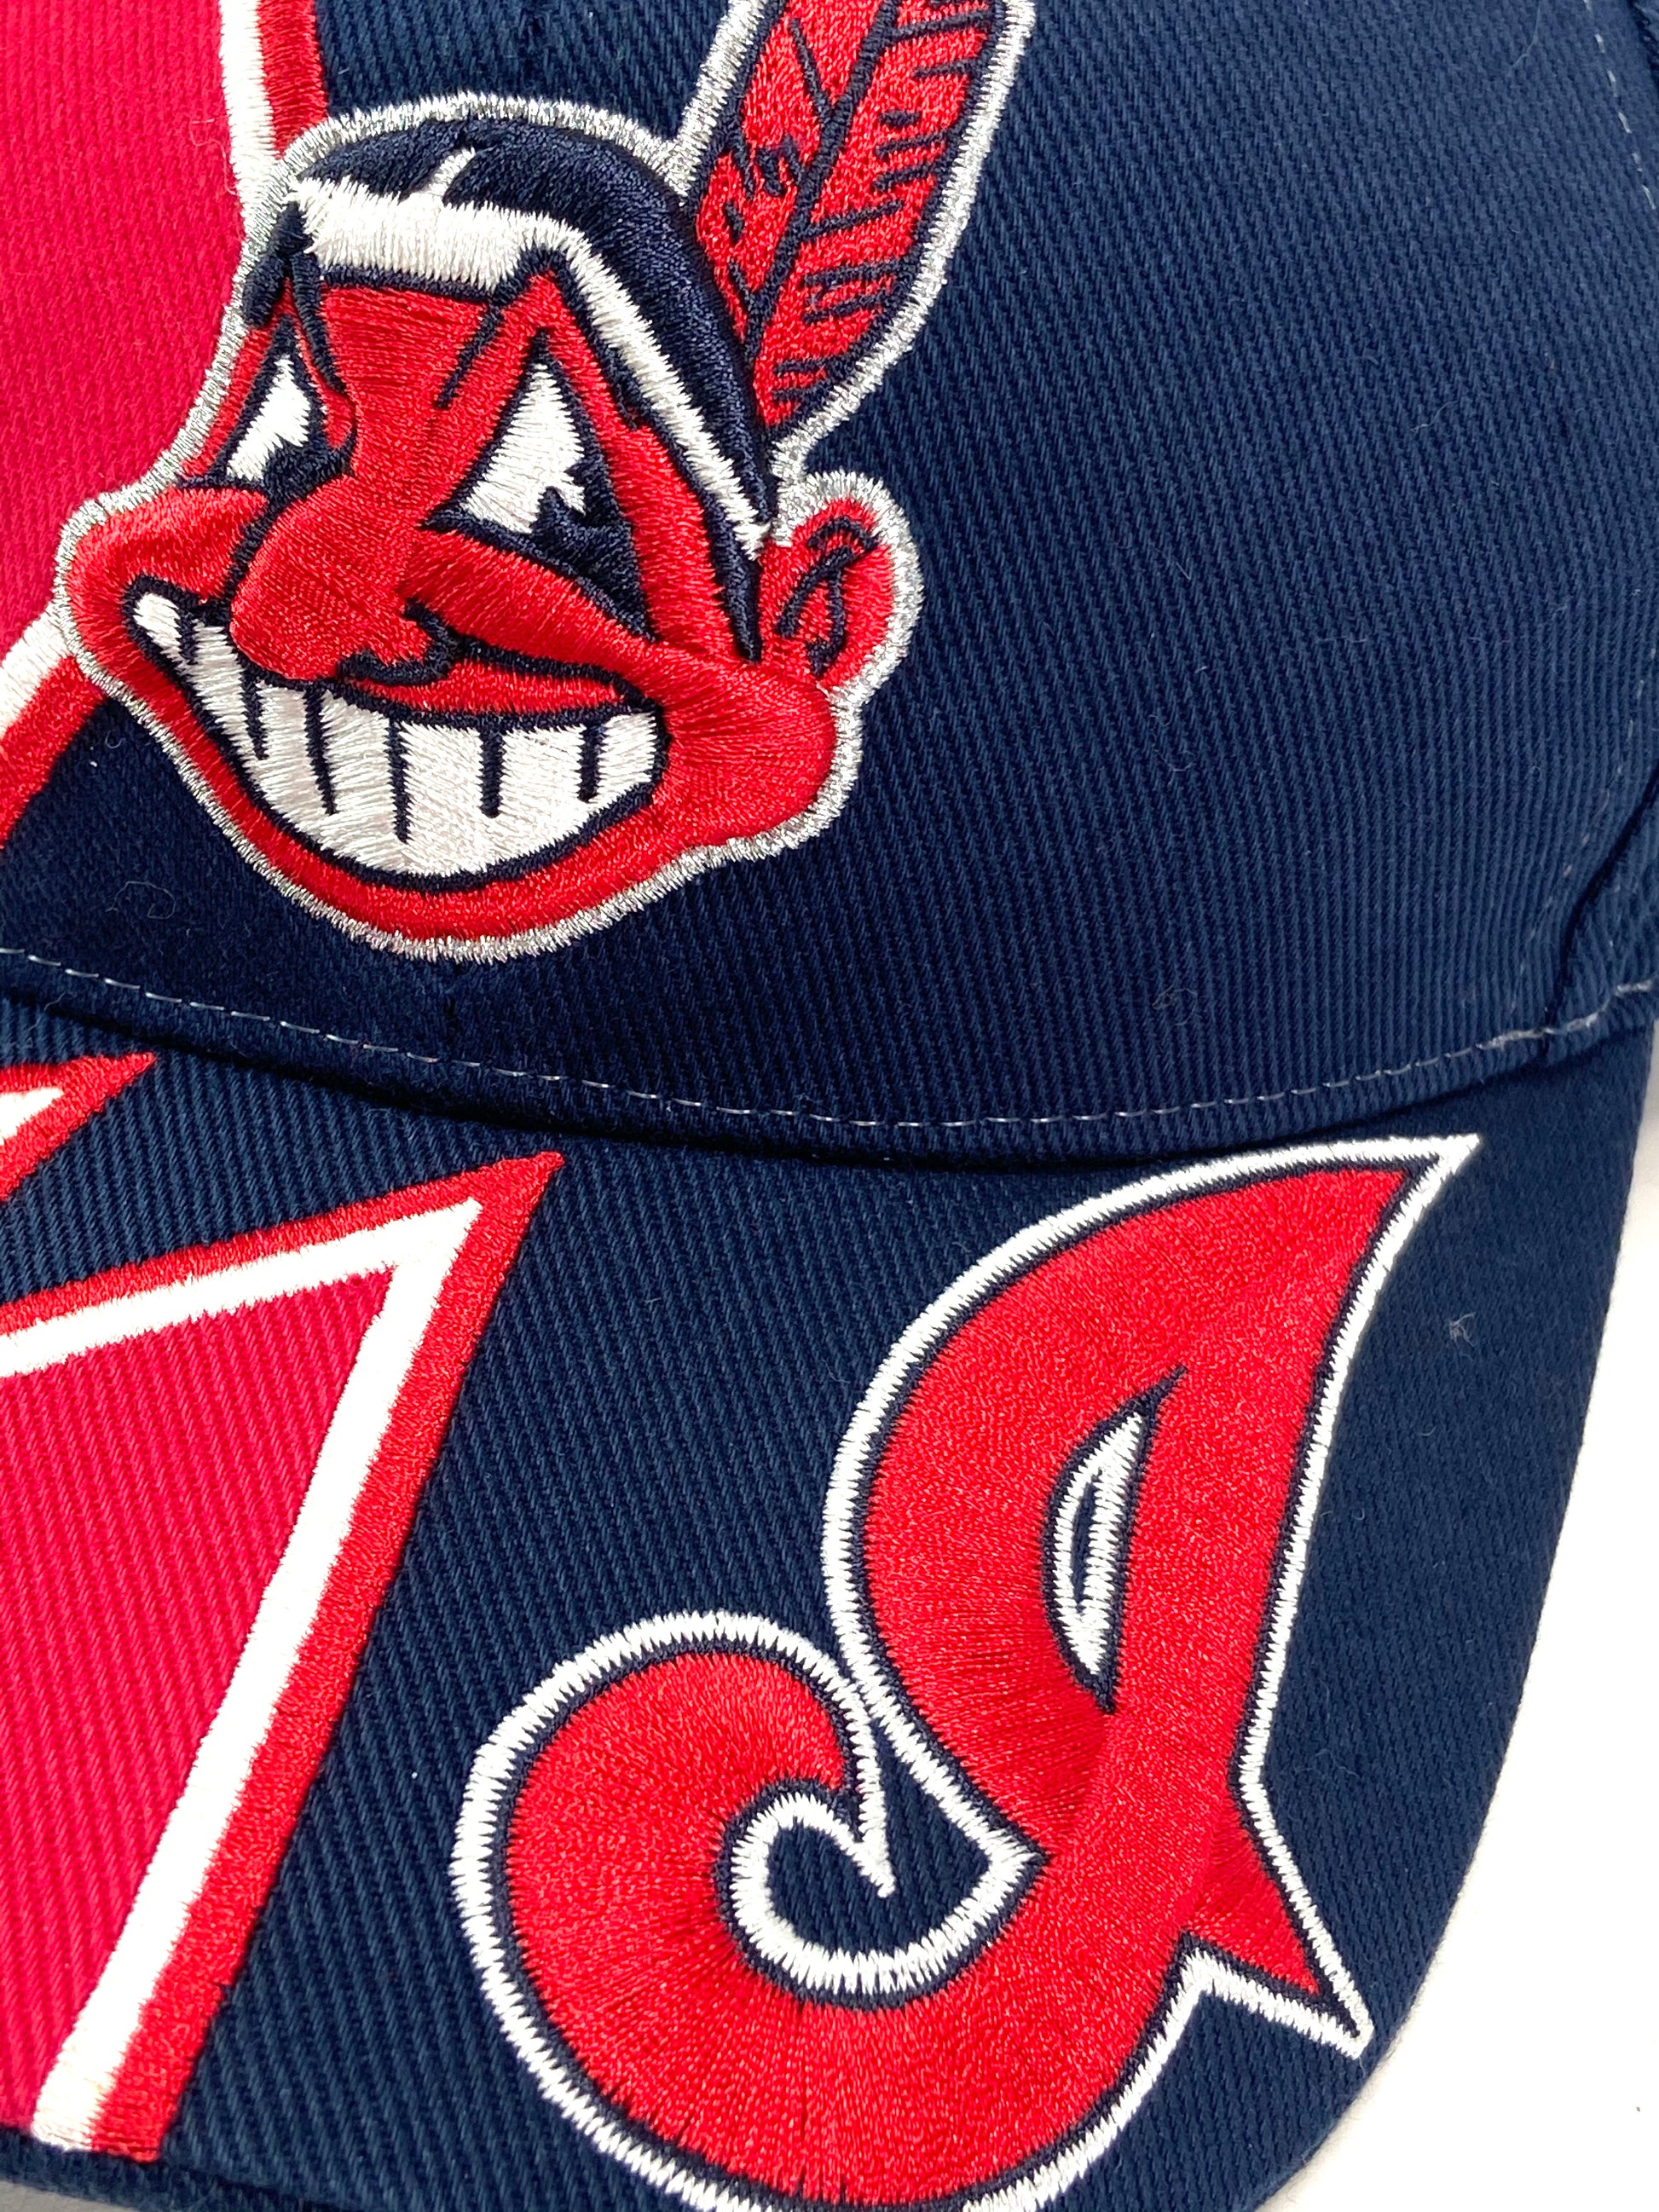 Cleveland Indians Vintage MLB Splash Hat by Twins Enterprise